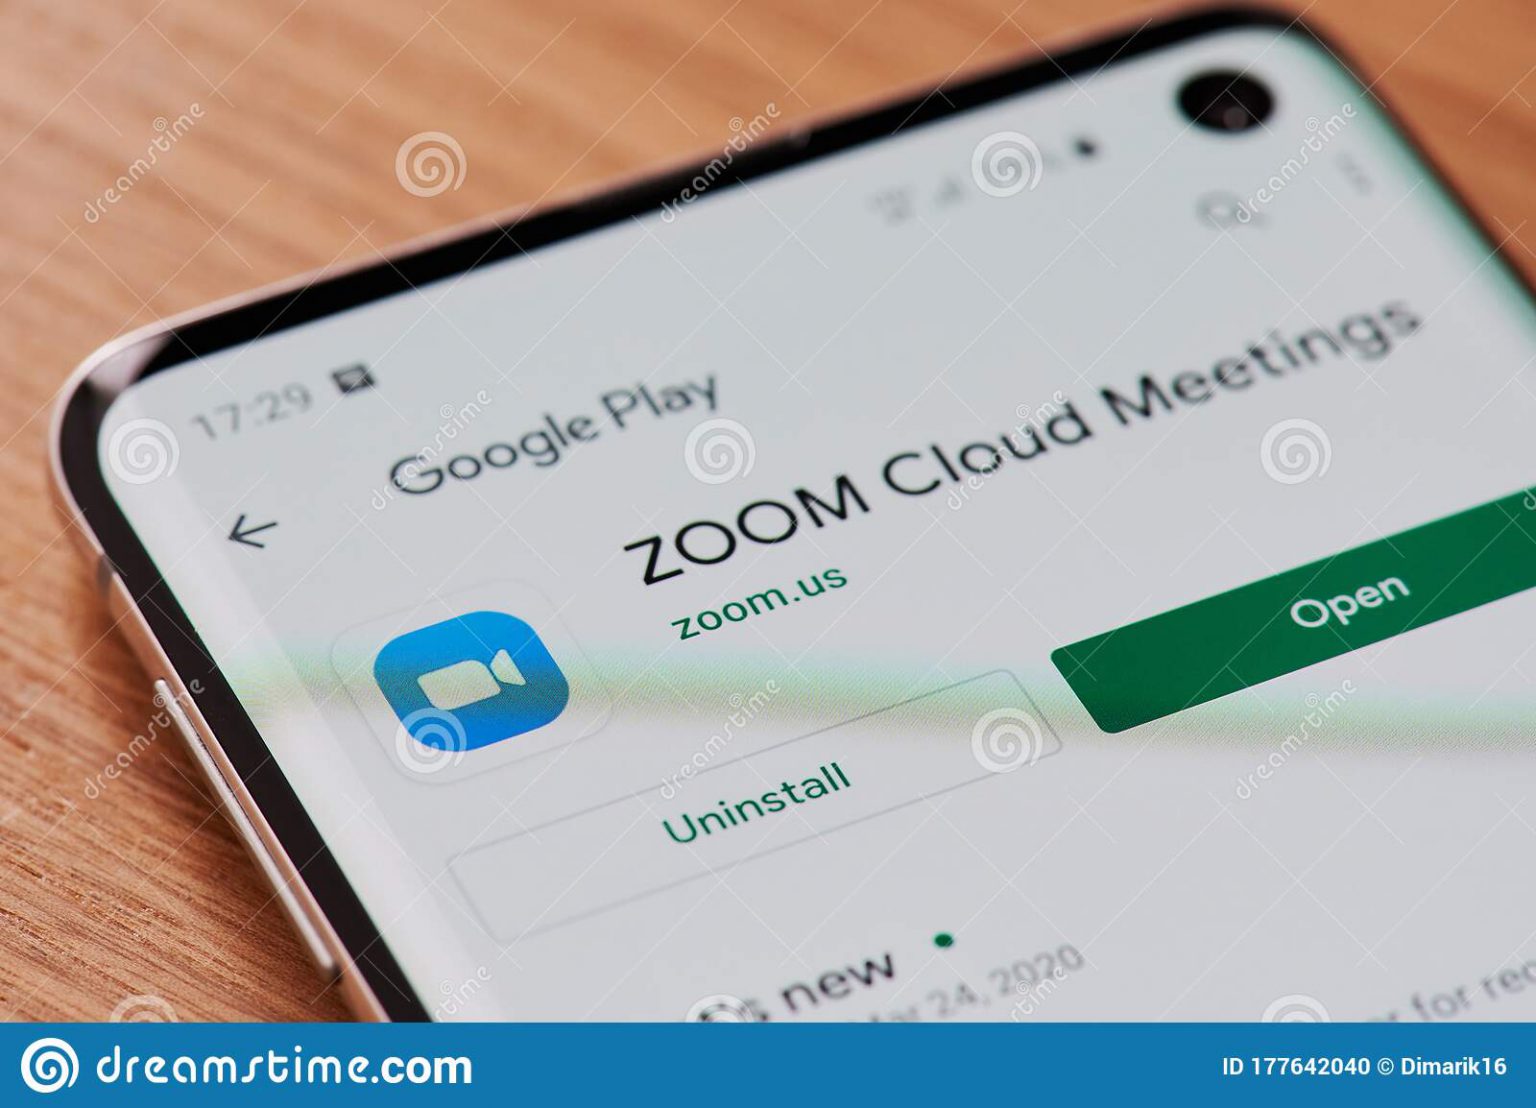 download zoom cloud meeting app for macbook pro